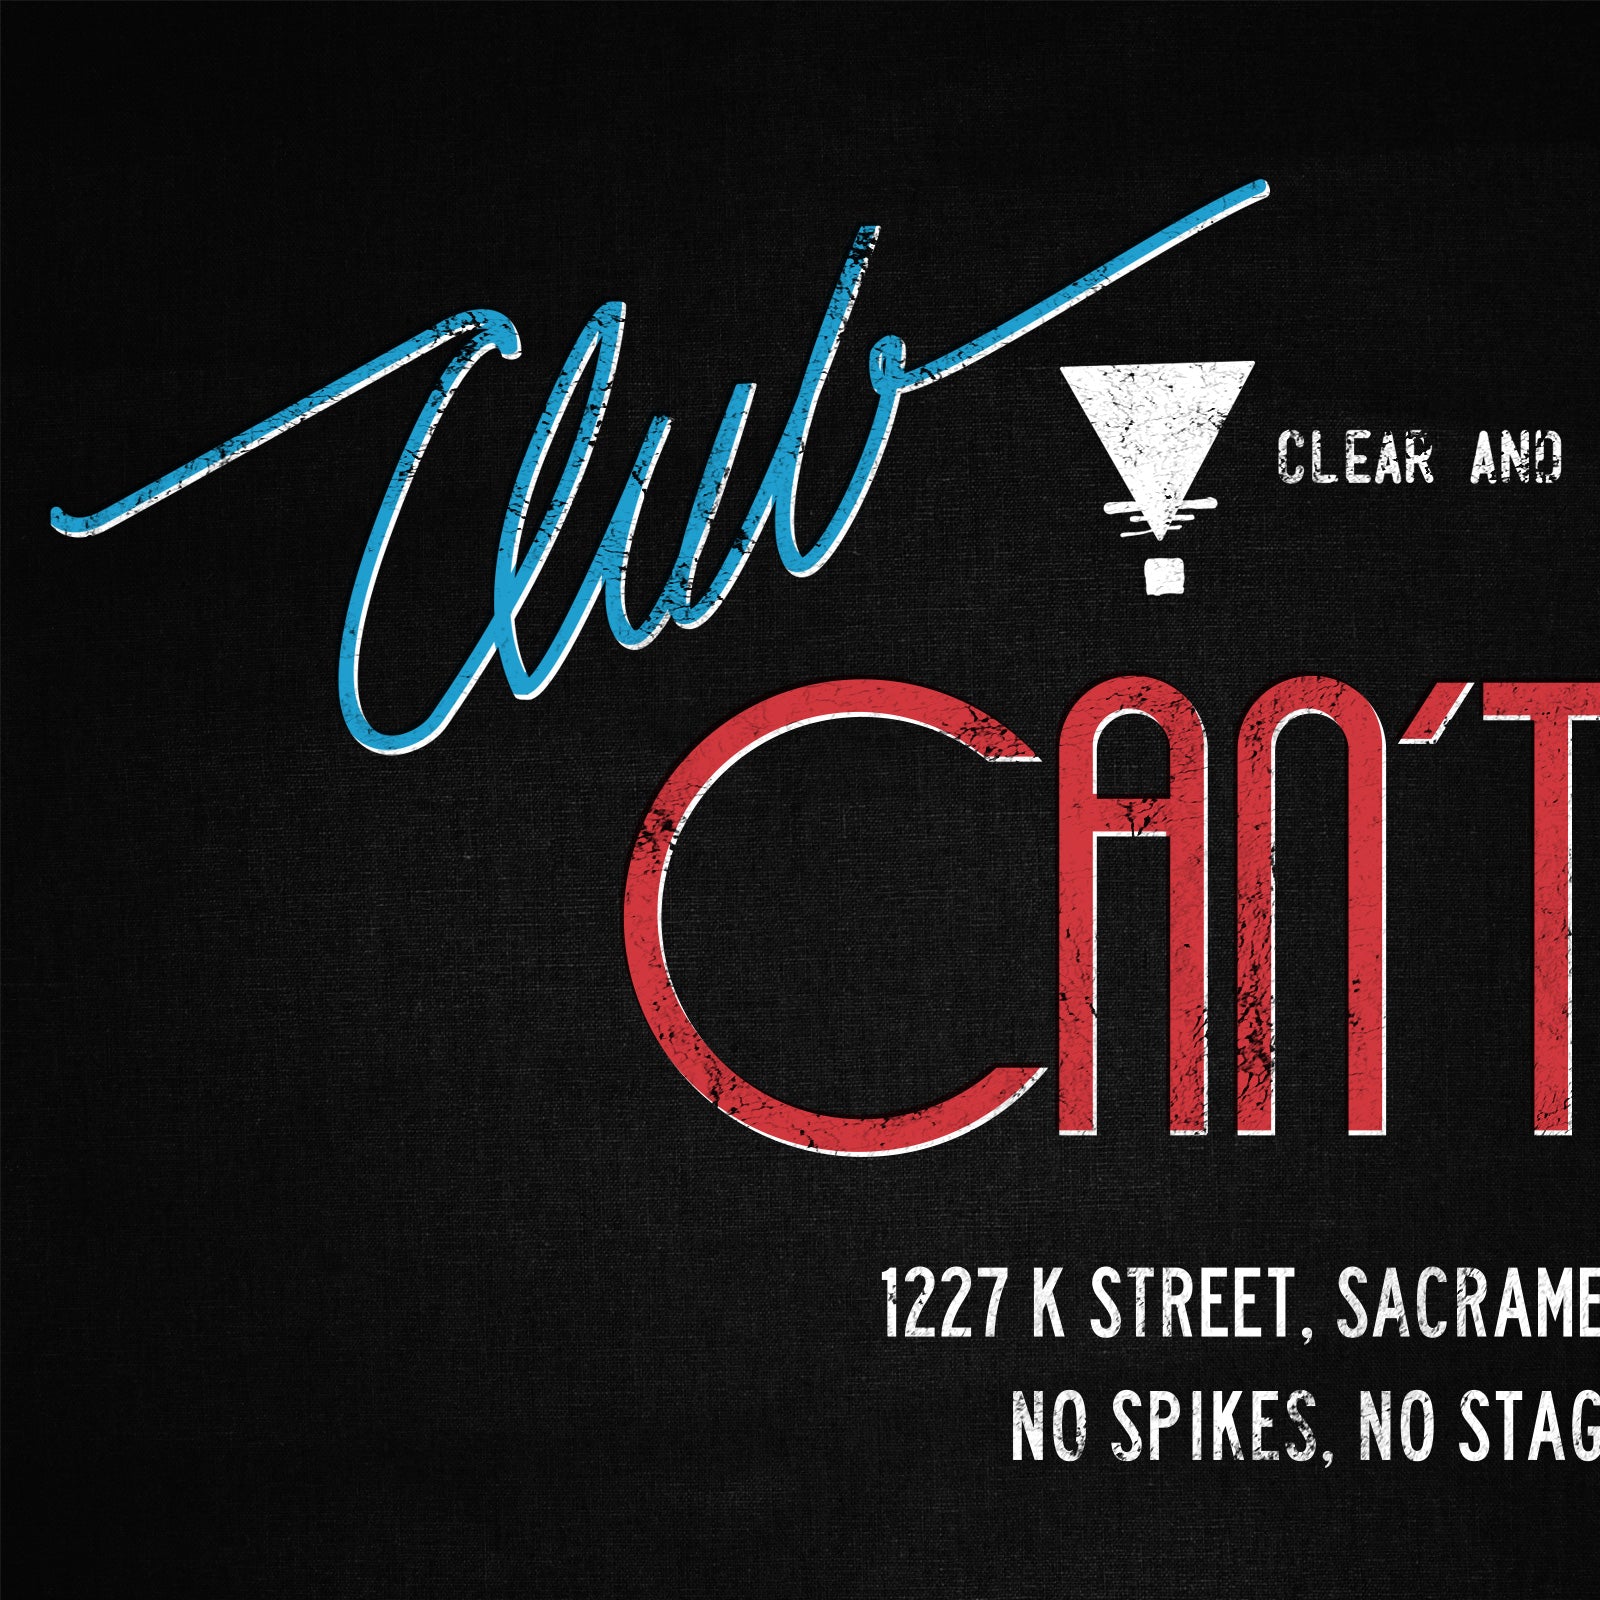 Club Can't Tell T-shirt, Sacramento CA